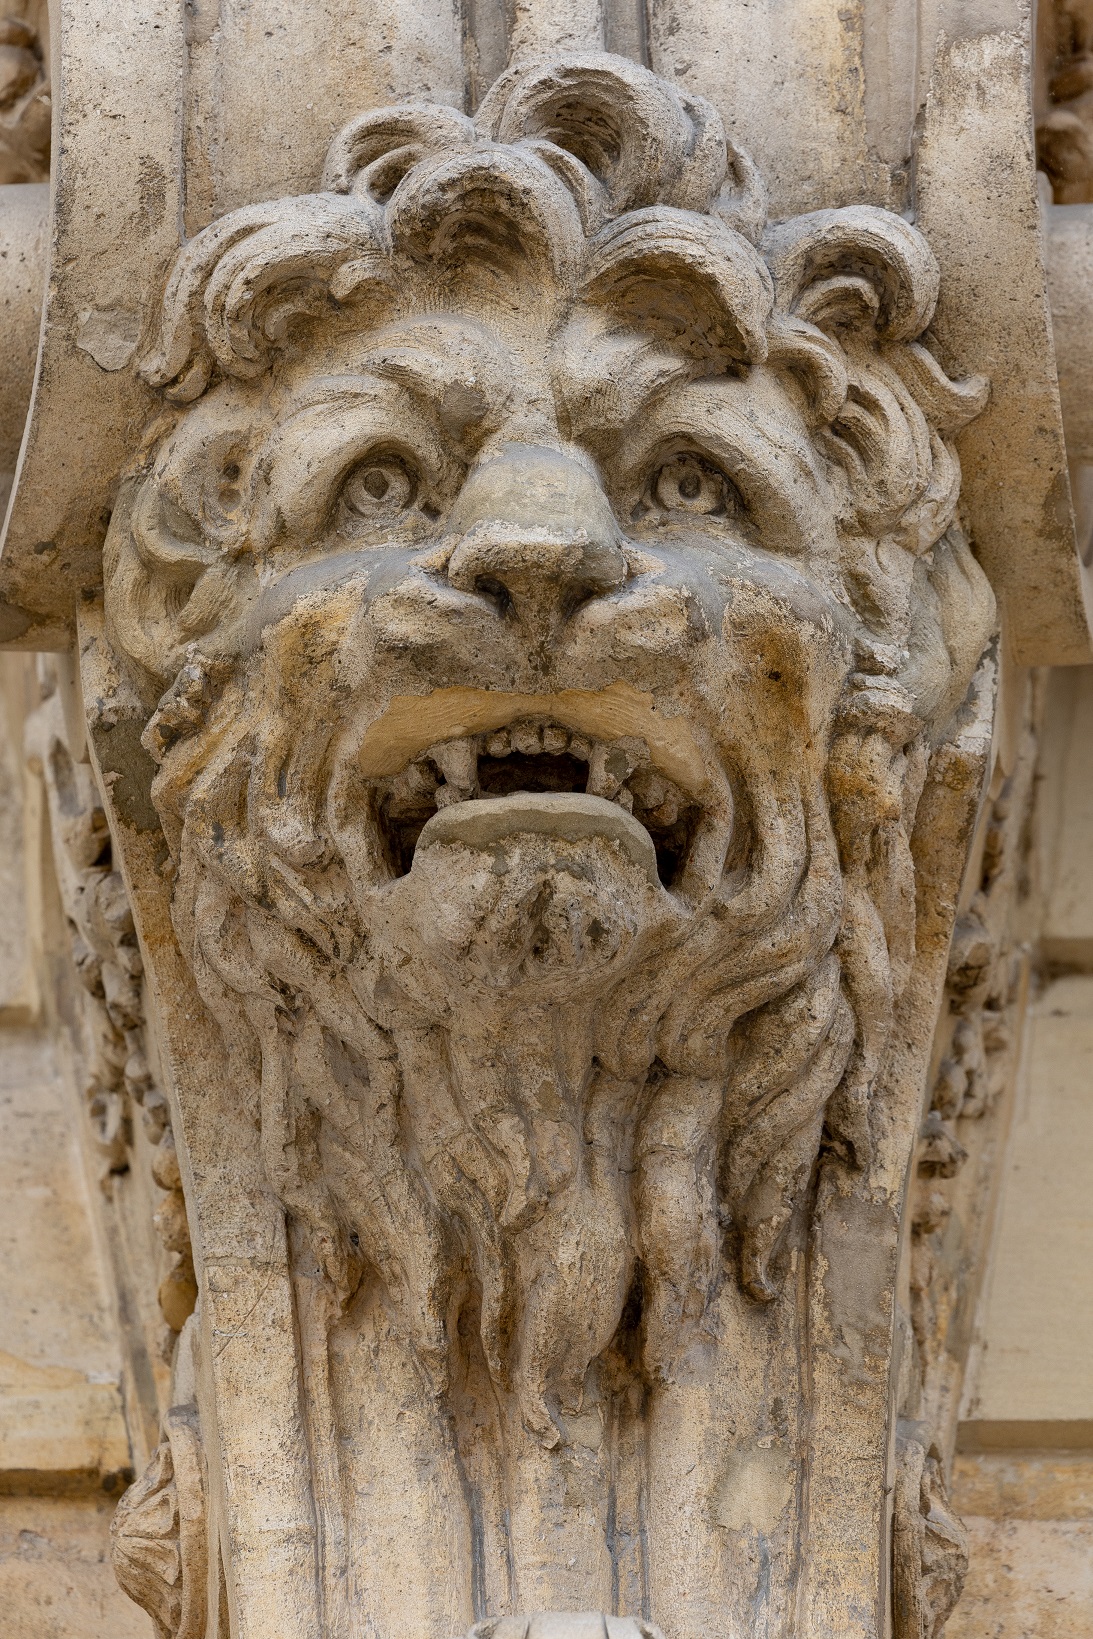 Détail
de la façade de l’hôtel de Matignon : tête de lion au niveau des consoles
qui soutiennent le balcon du premier étage.